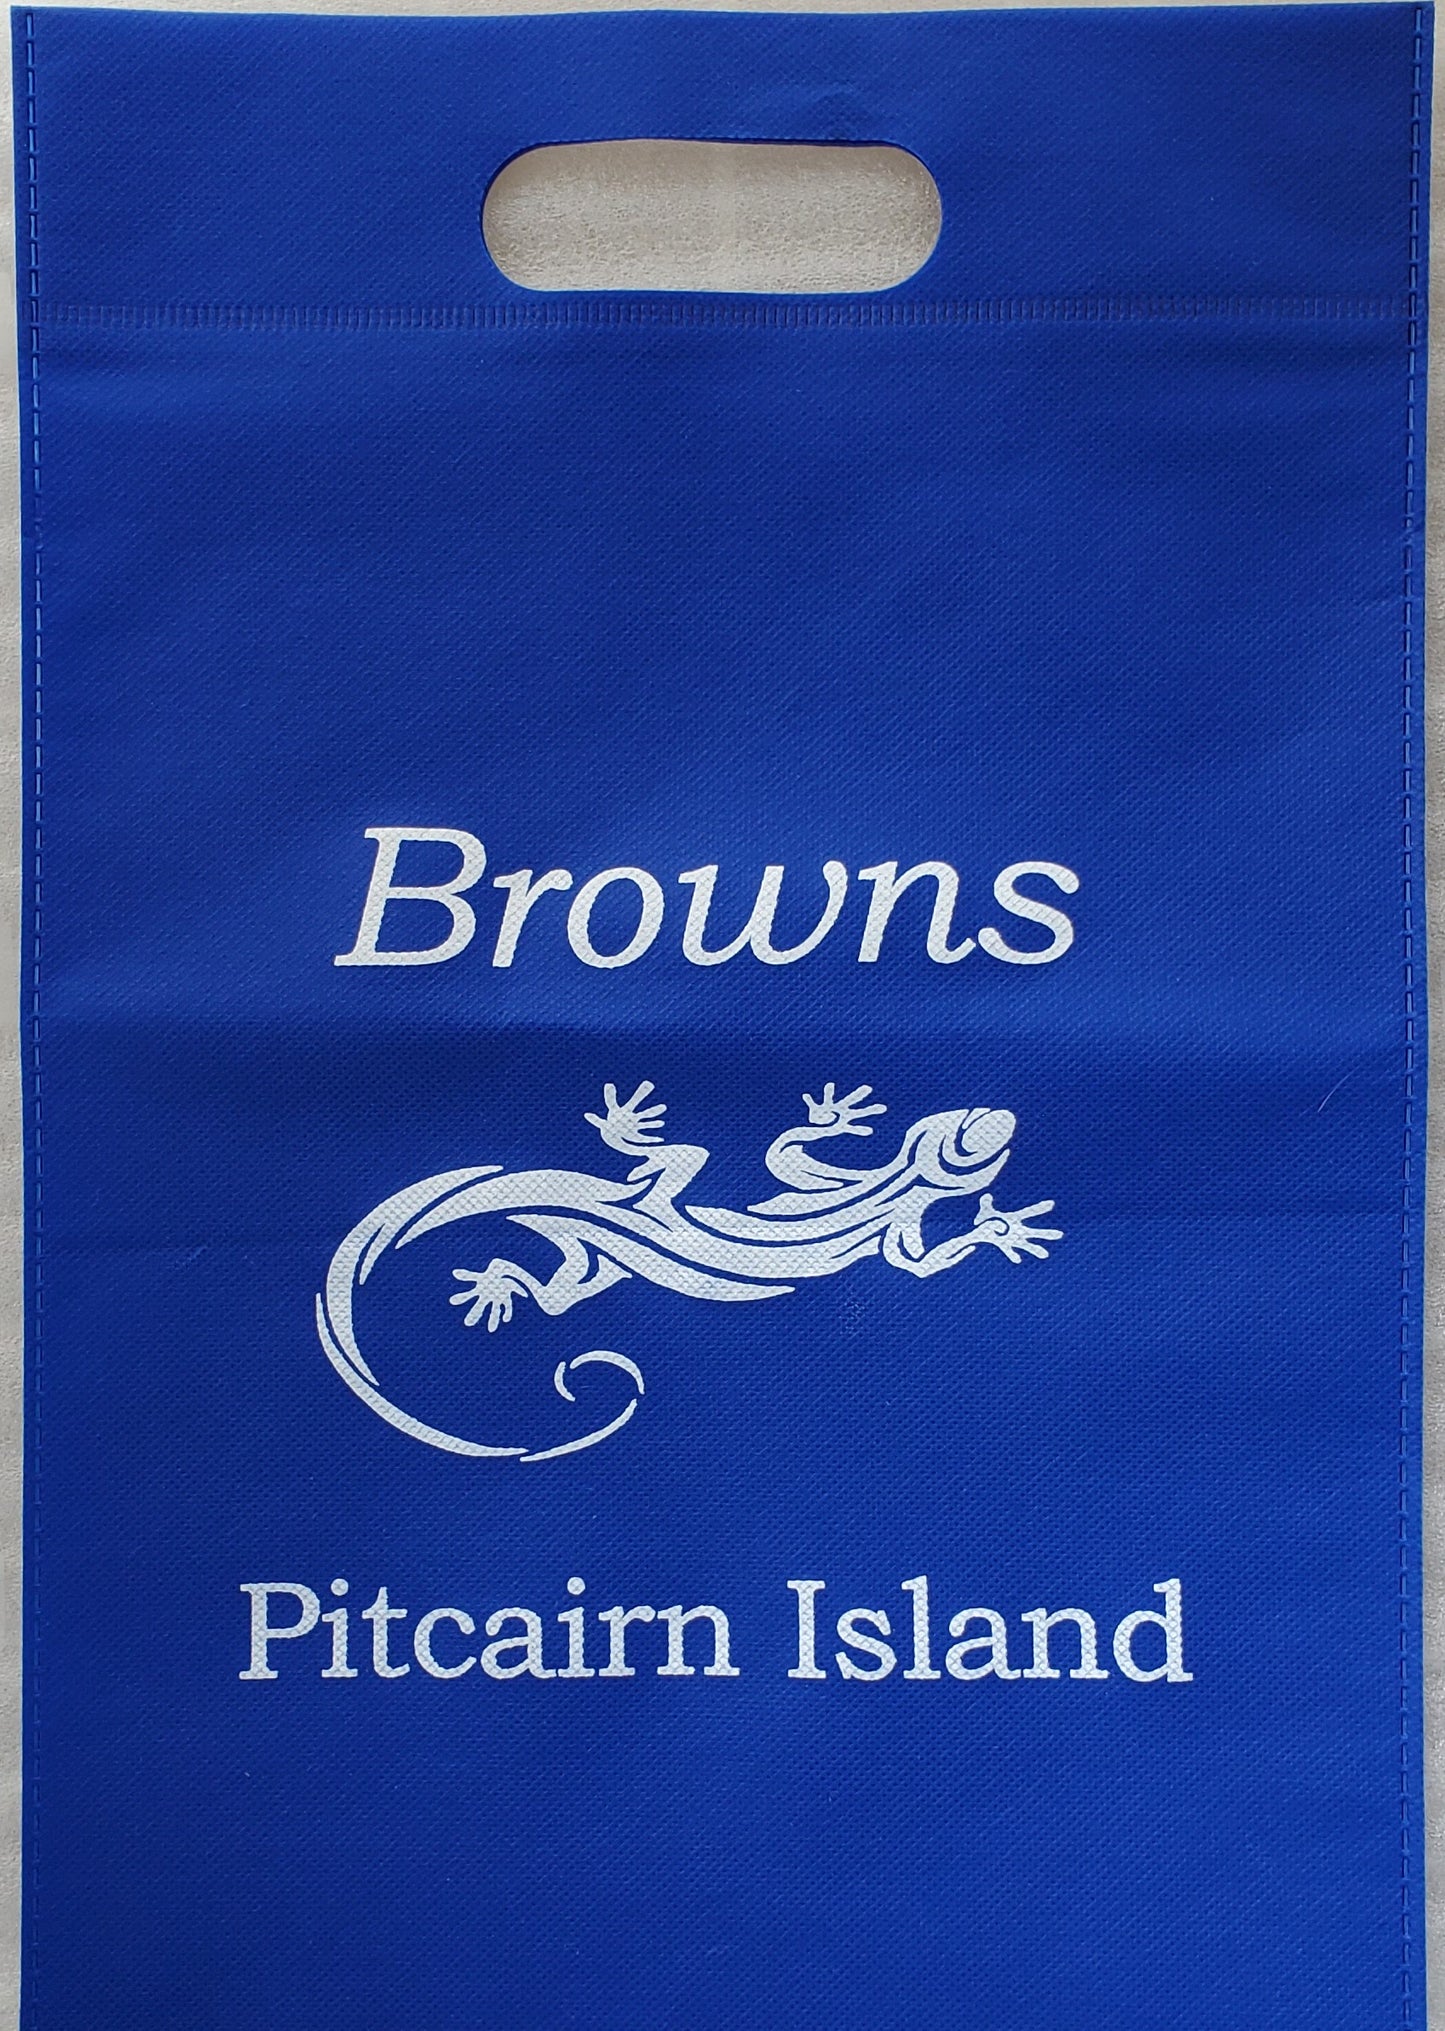 Pitcairn Island Branded Midi Einkaufstasche - Königsblau